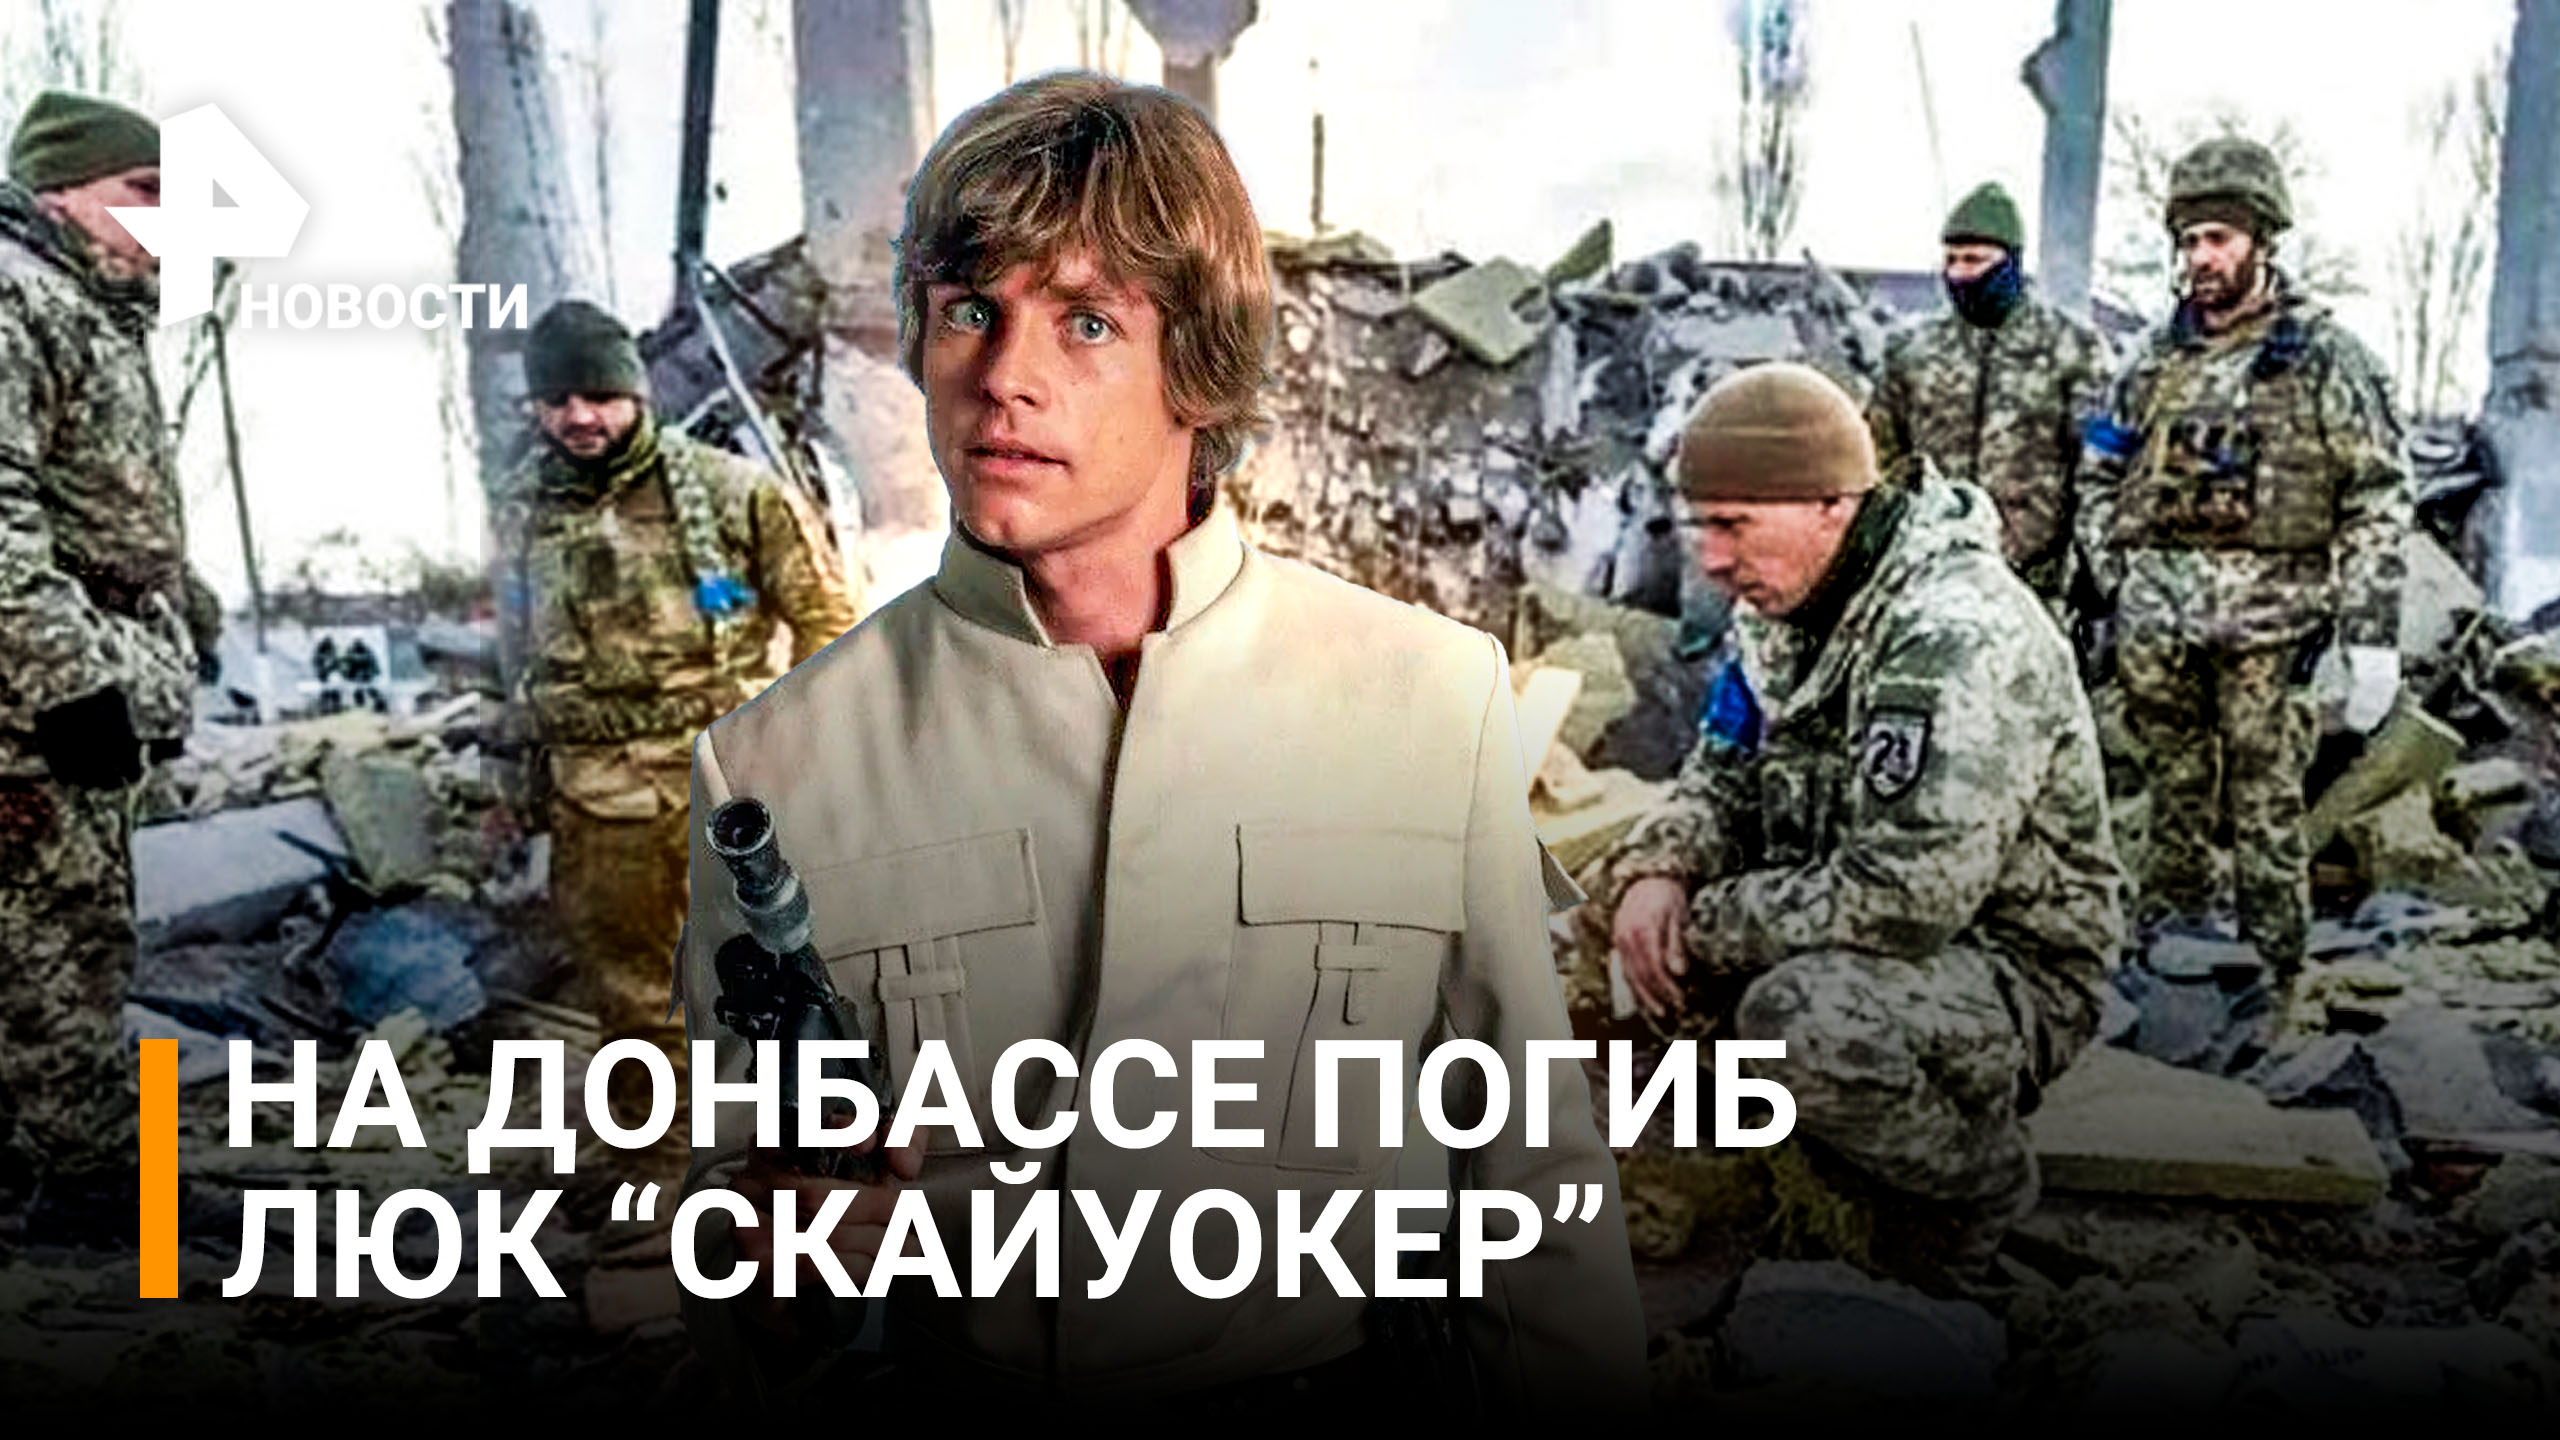 Люк "Скайуокер" и еще трое наемников погибли в Донбассе / РЕН Новости